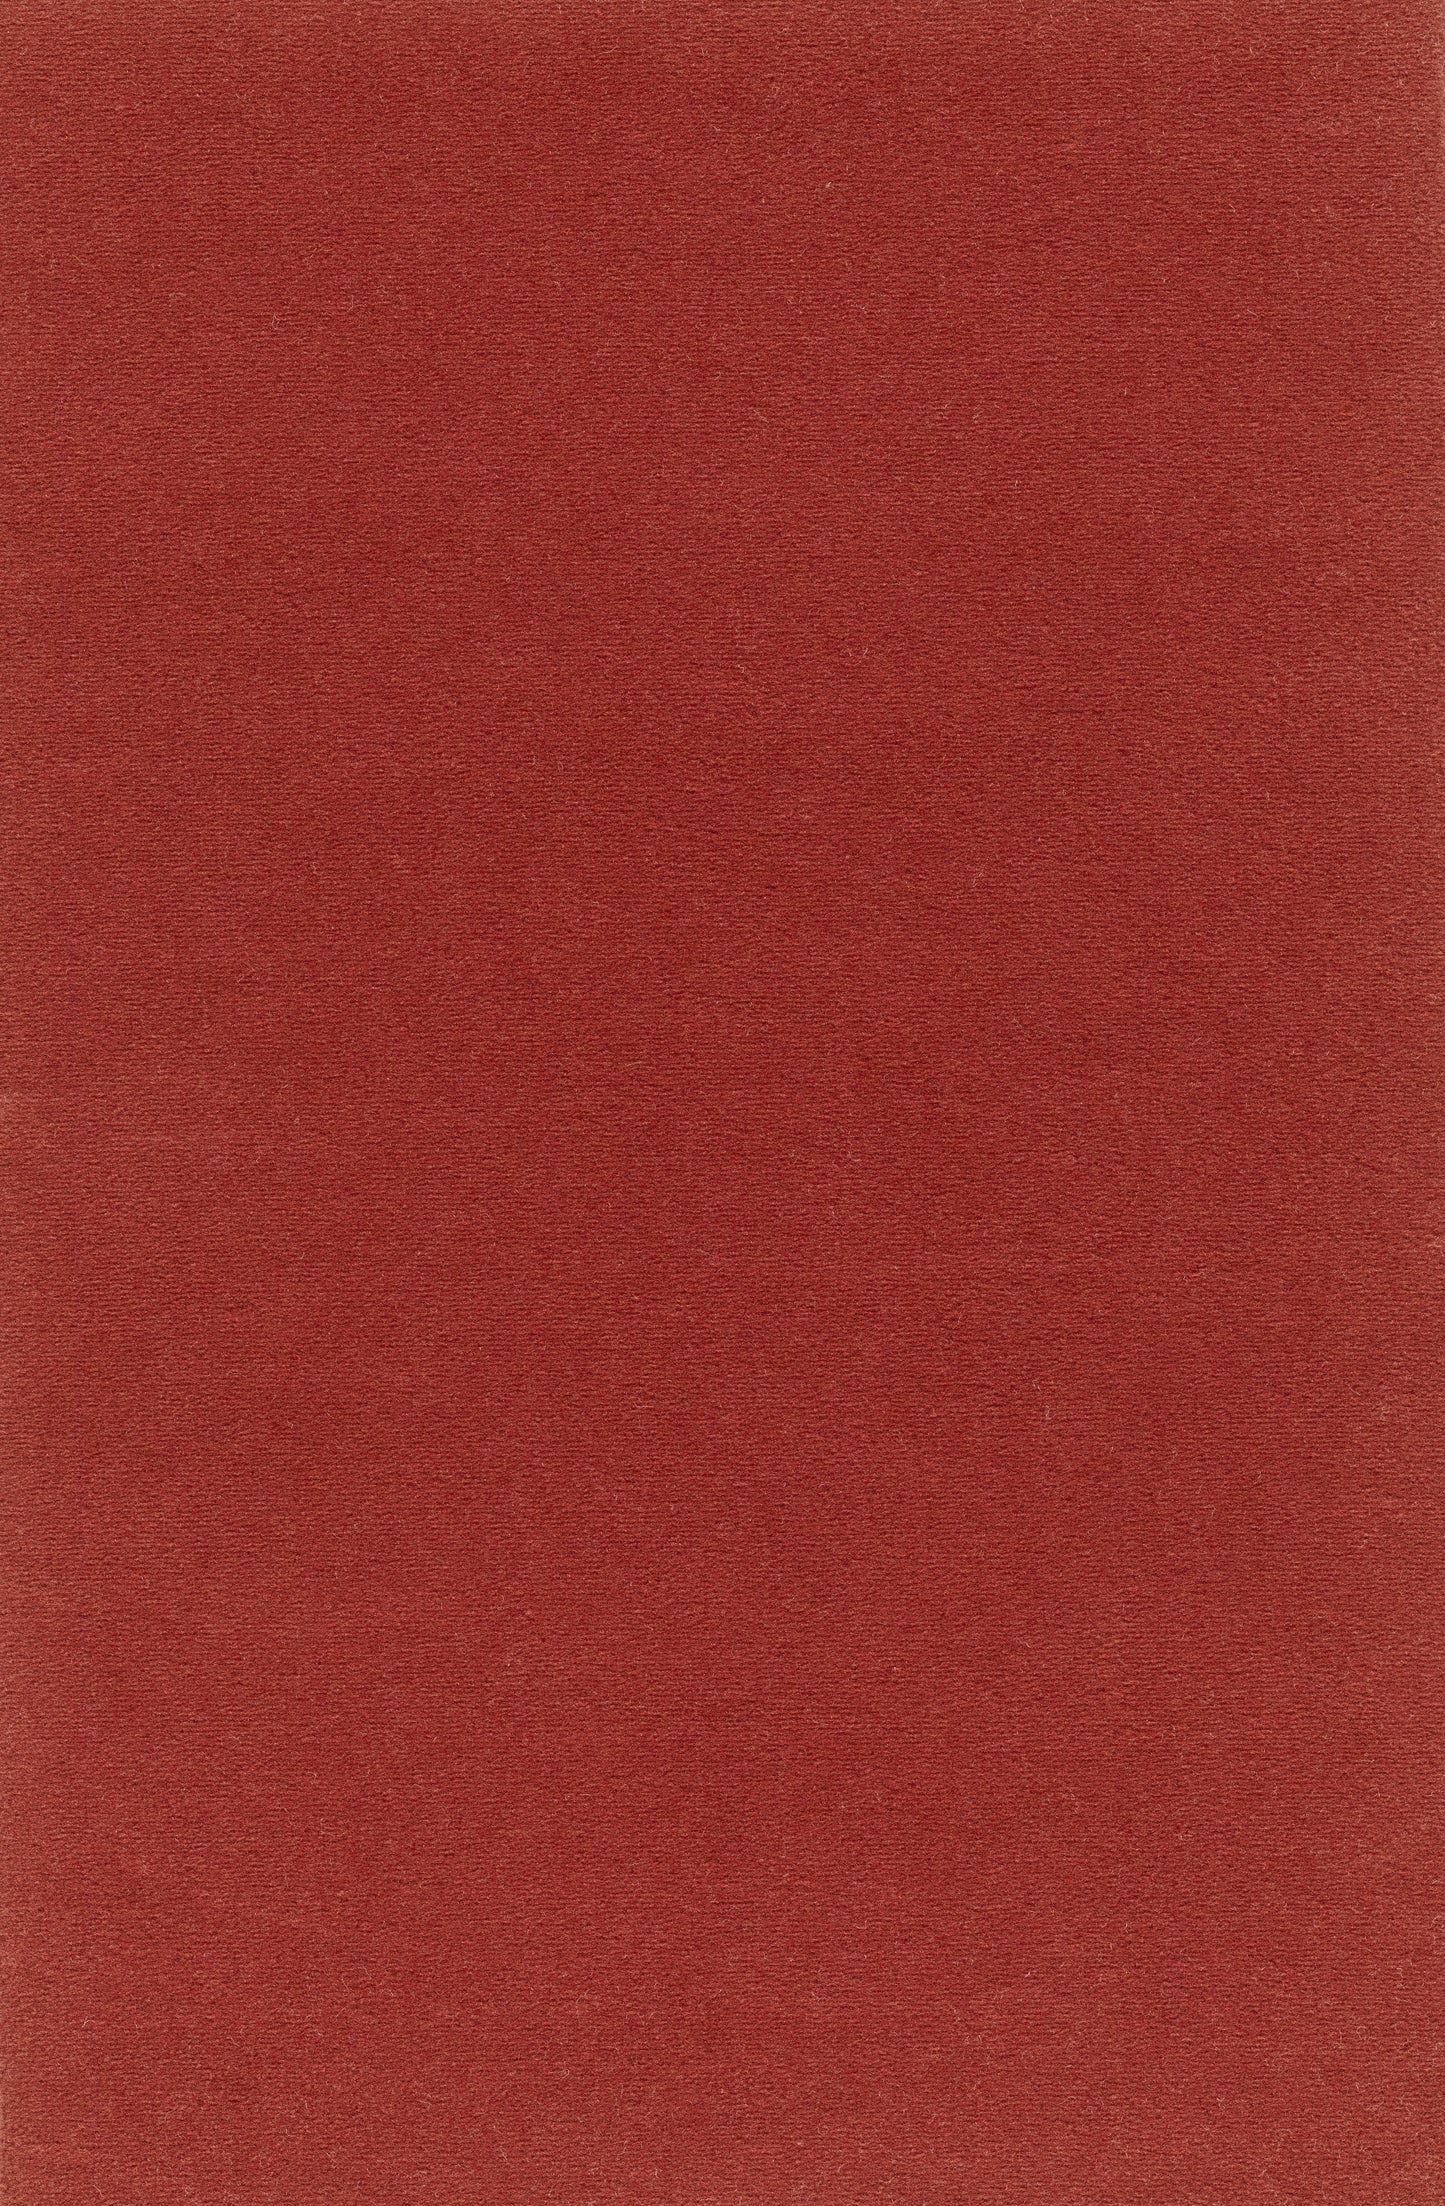 Vorwerk Passion "Modena" Teppichboden - 1P02 Rot